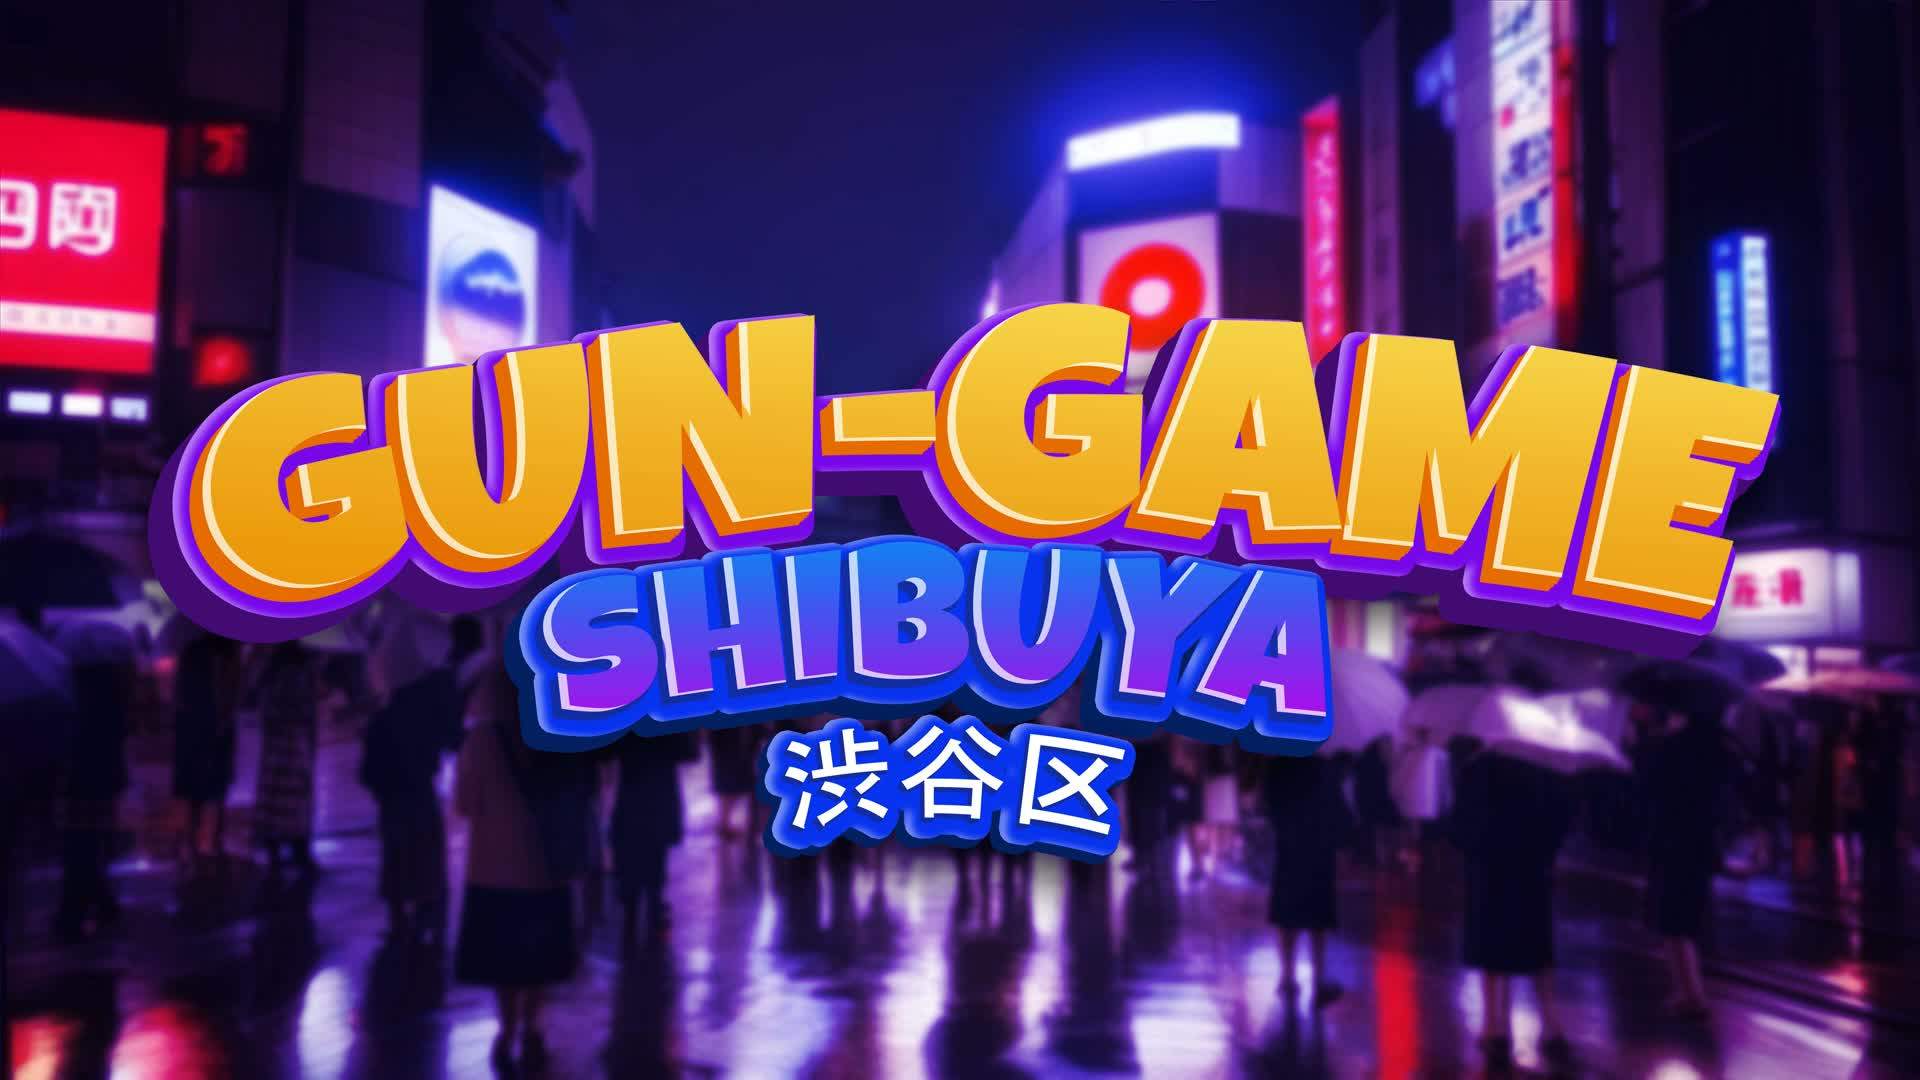 THE SHIBUYA GUN-GAME